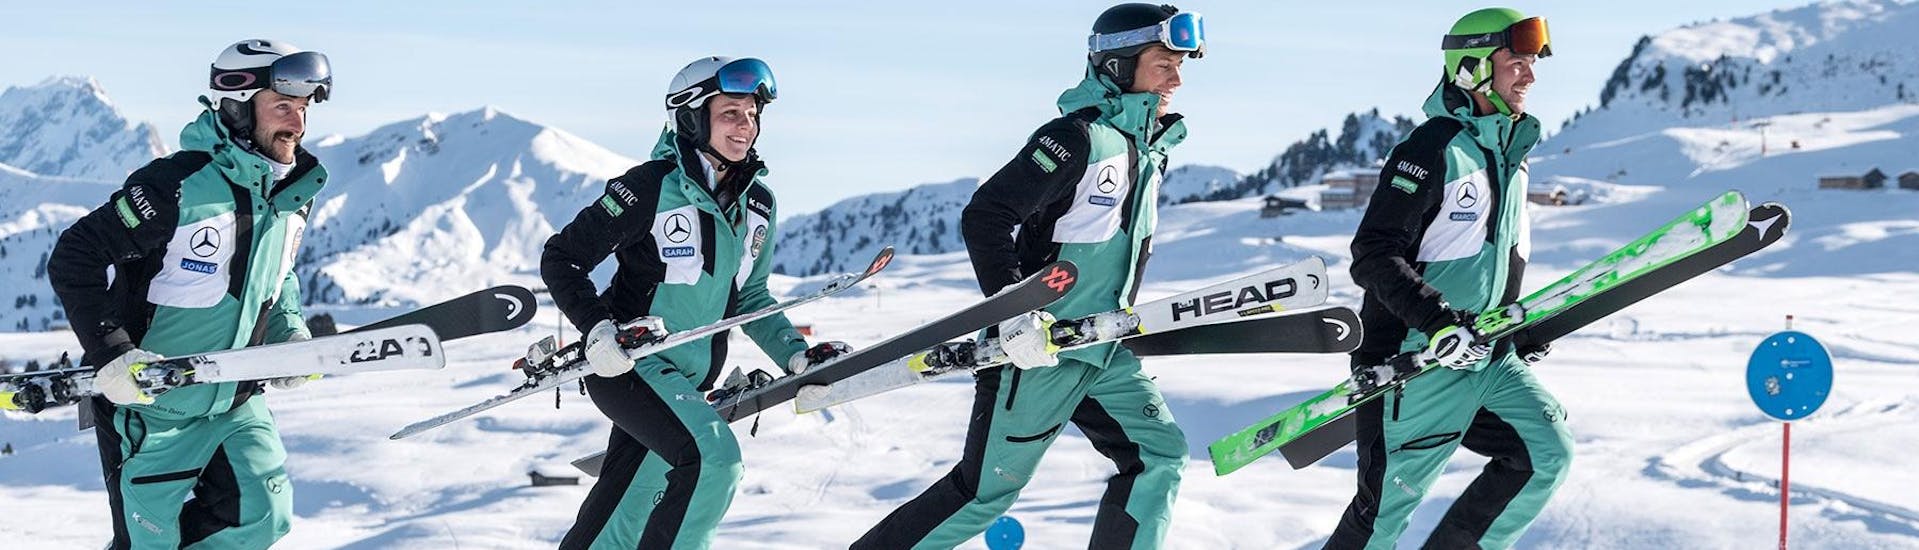 Skilehrer der Skischule Schlern 3000 aufgestellt nebeneinander mit ihren Skiern.